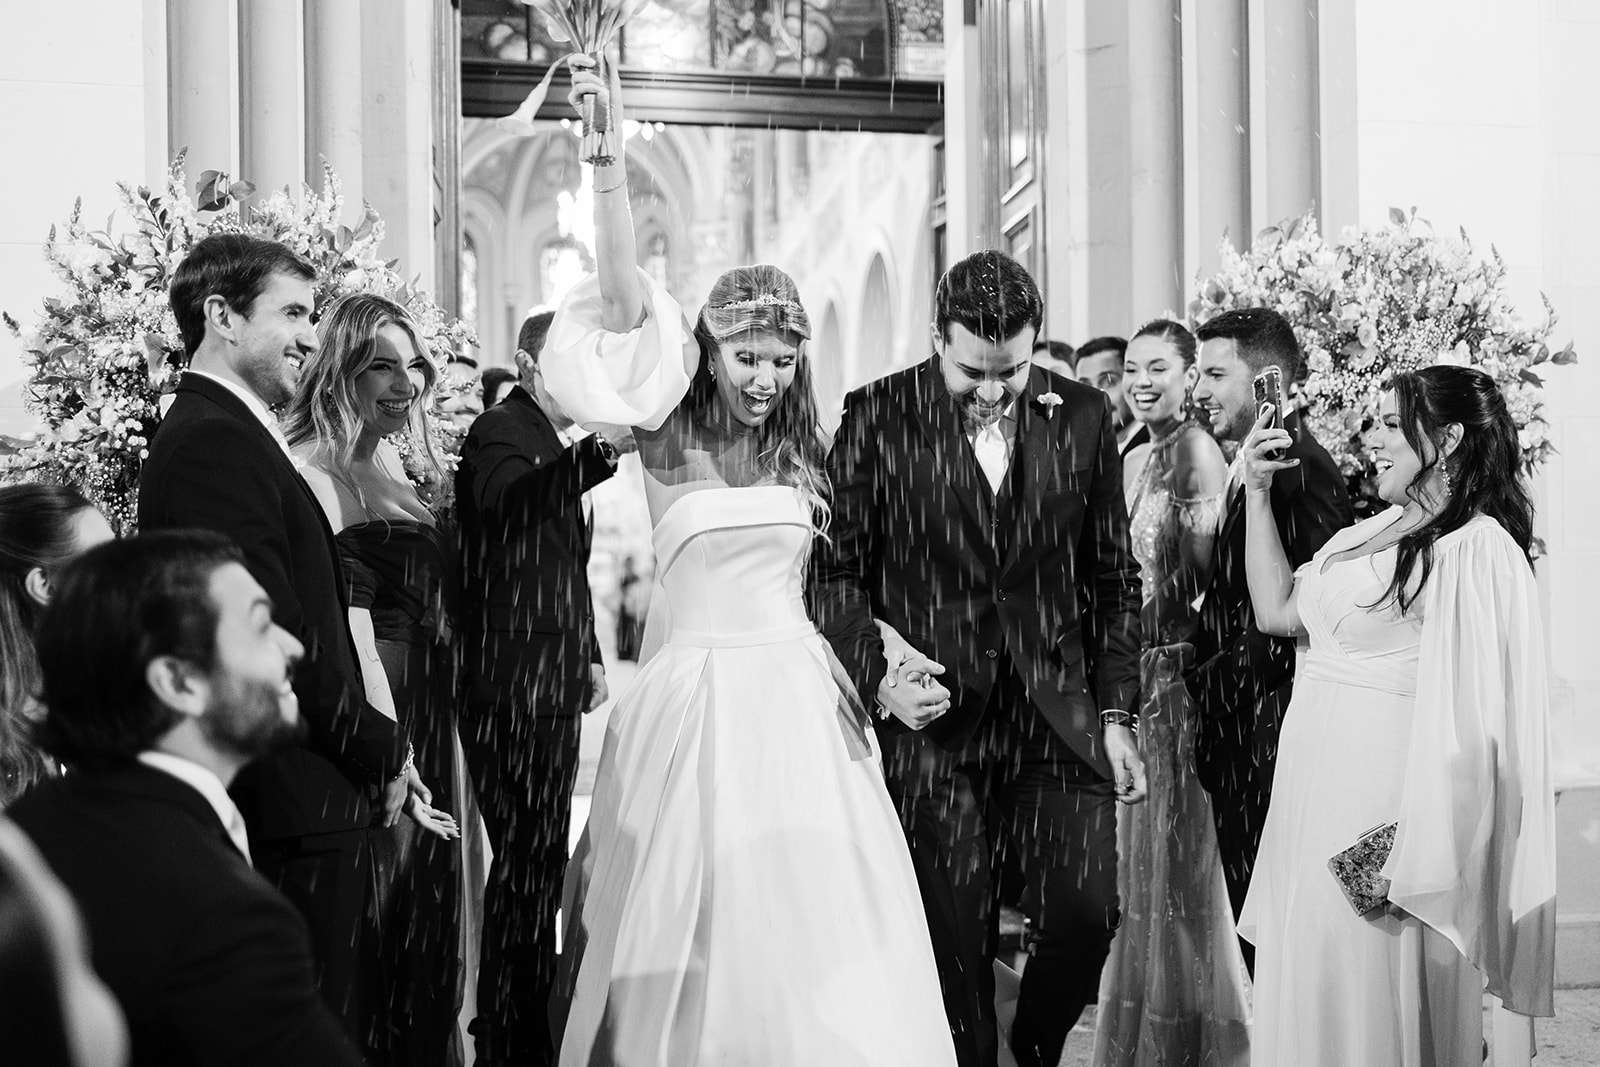 Com direito a chuva de arroz, noivos vivem o casamento dos sonhos durante cerimônia clássica em São Paulo | Foto: Ricky Arruda e Anna Quast